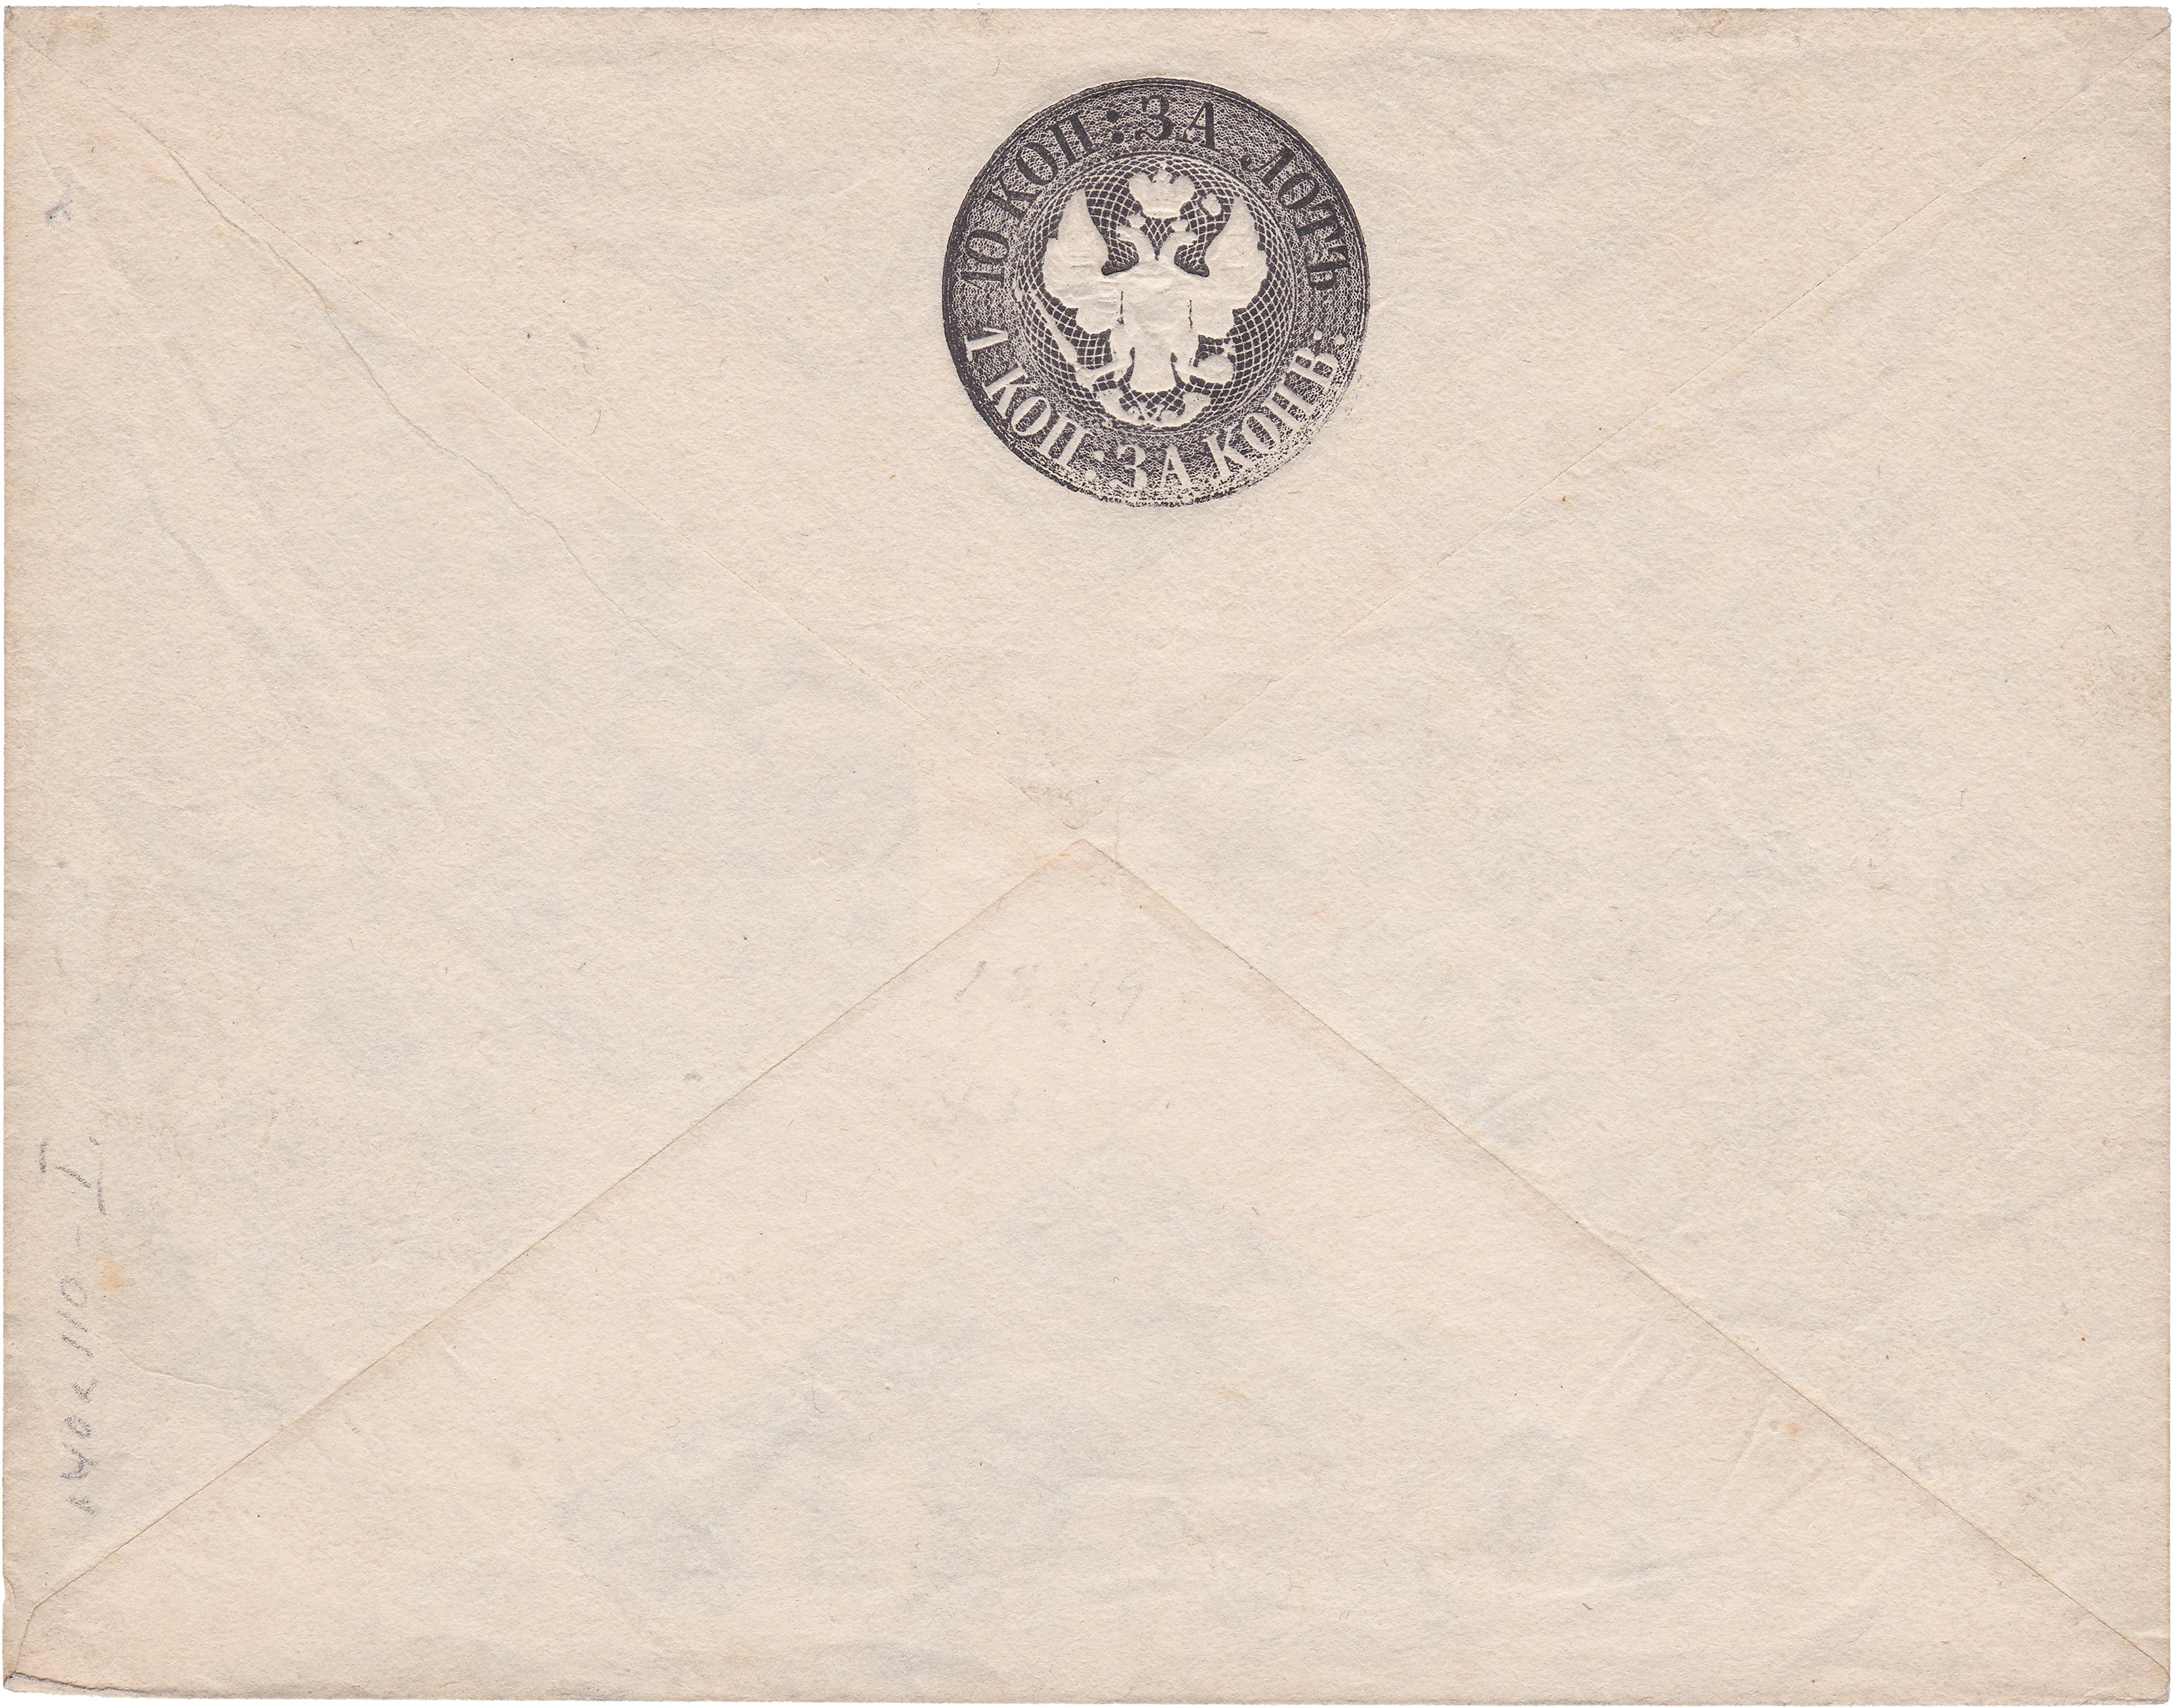 Штемпельный конверт 1 Копейка за конверт 1849 год. Третий выпуск первого периода штемпельных конвертов общегосударственной почты